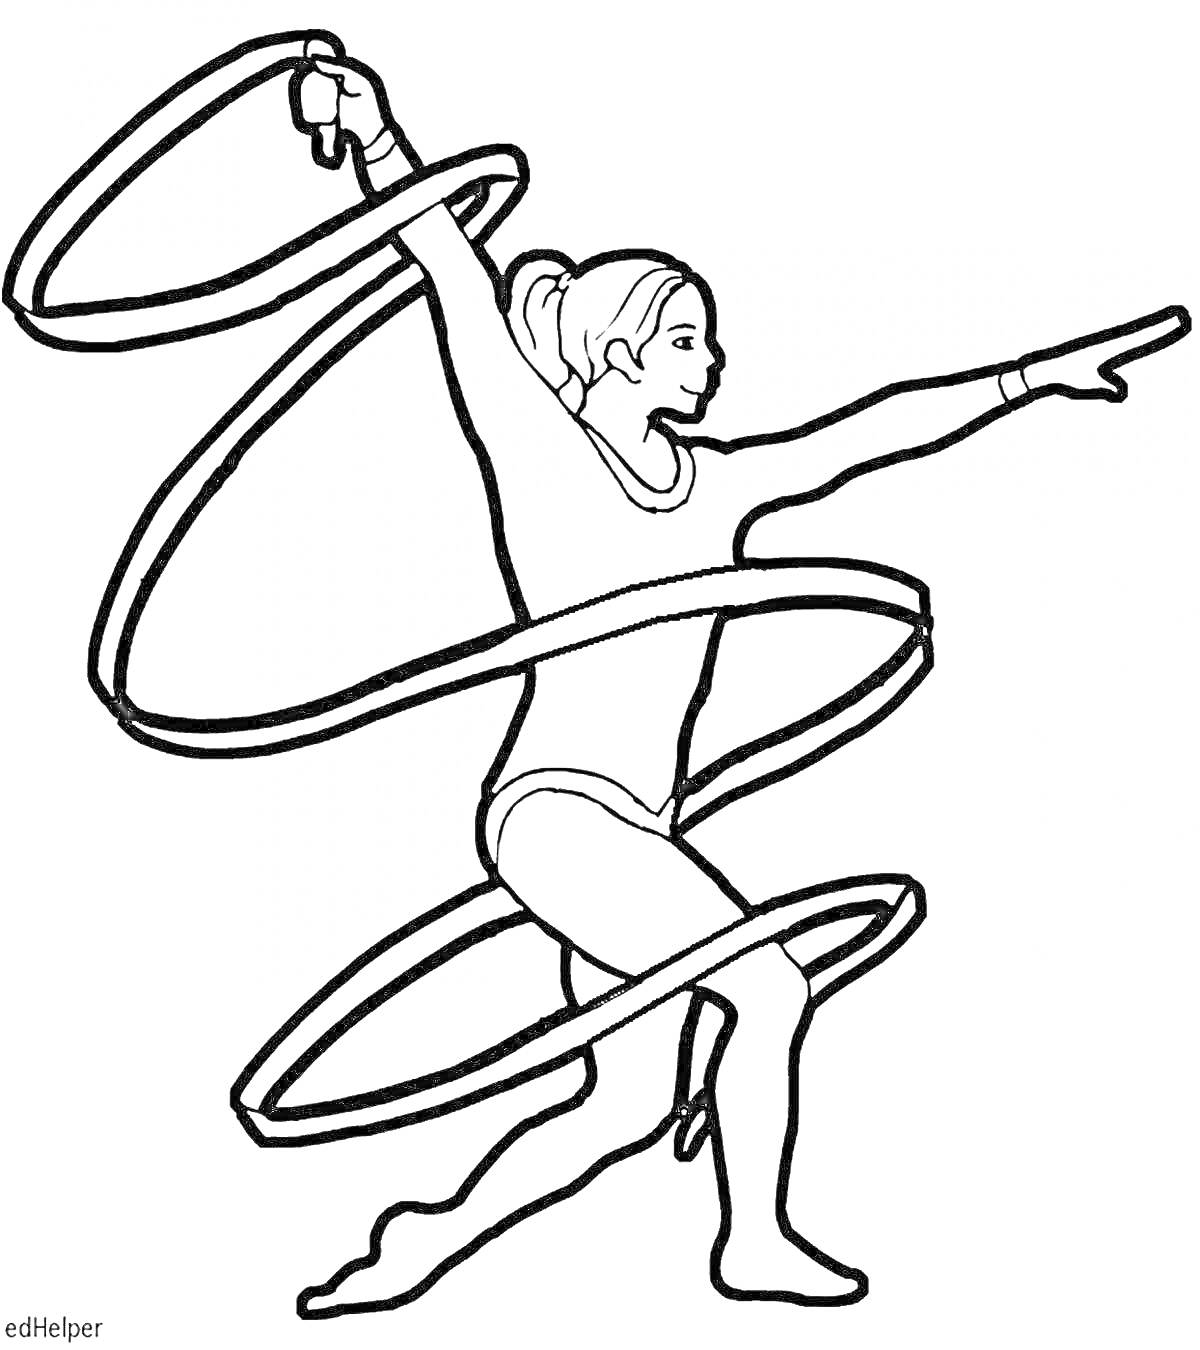 Раскраска Художественная гимнастика с лентой, гимнастка в позе с поднятой рукой и ленточкой, закрученной вокруг её тела